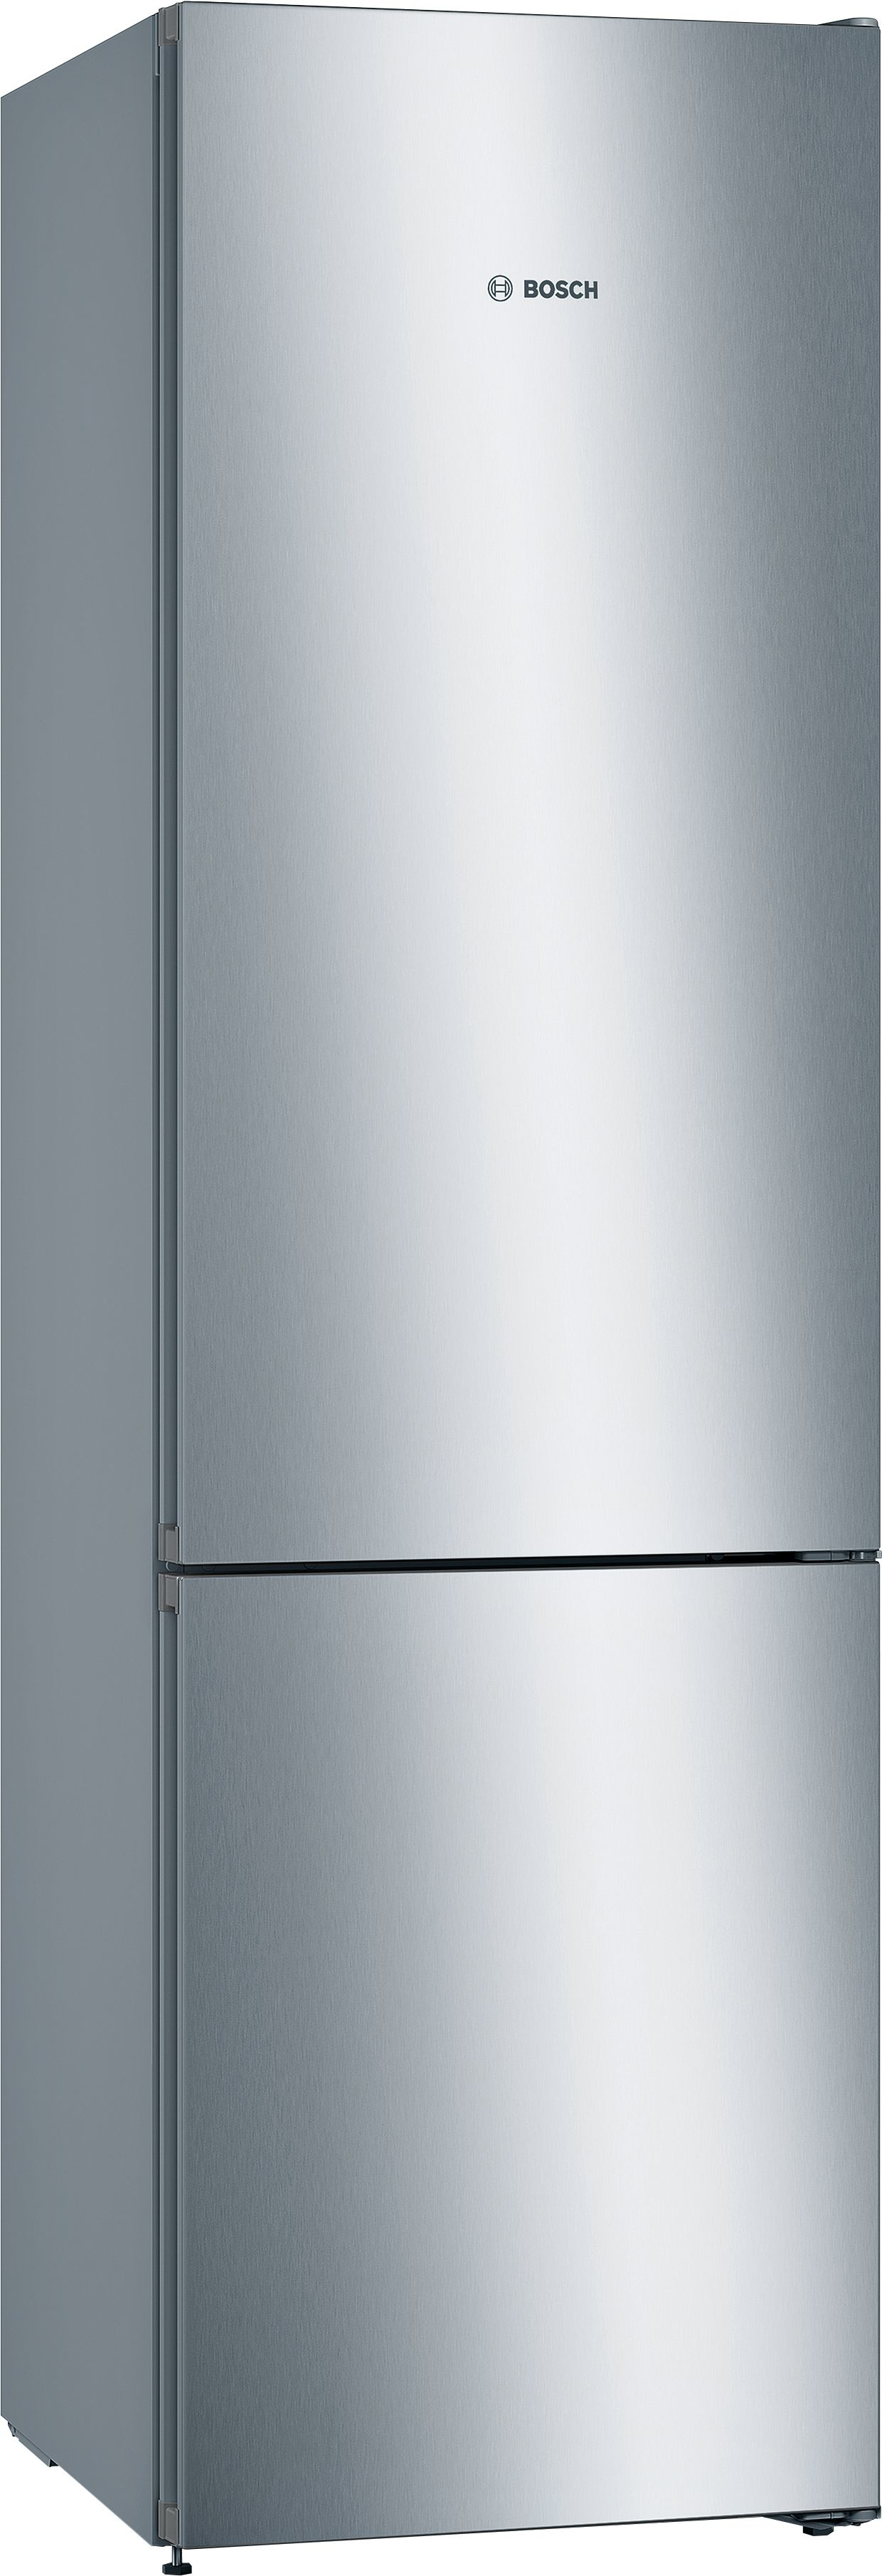 bsh elettrodomestici spa bosch serie 4 kgn392ldc frigorifero con congelatore libera installazione 368 l d acciaio inossidabile argento donna